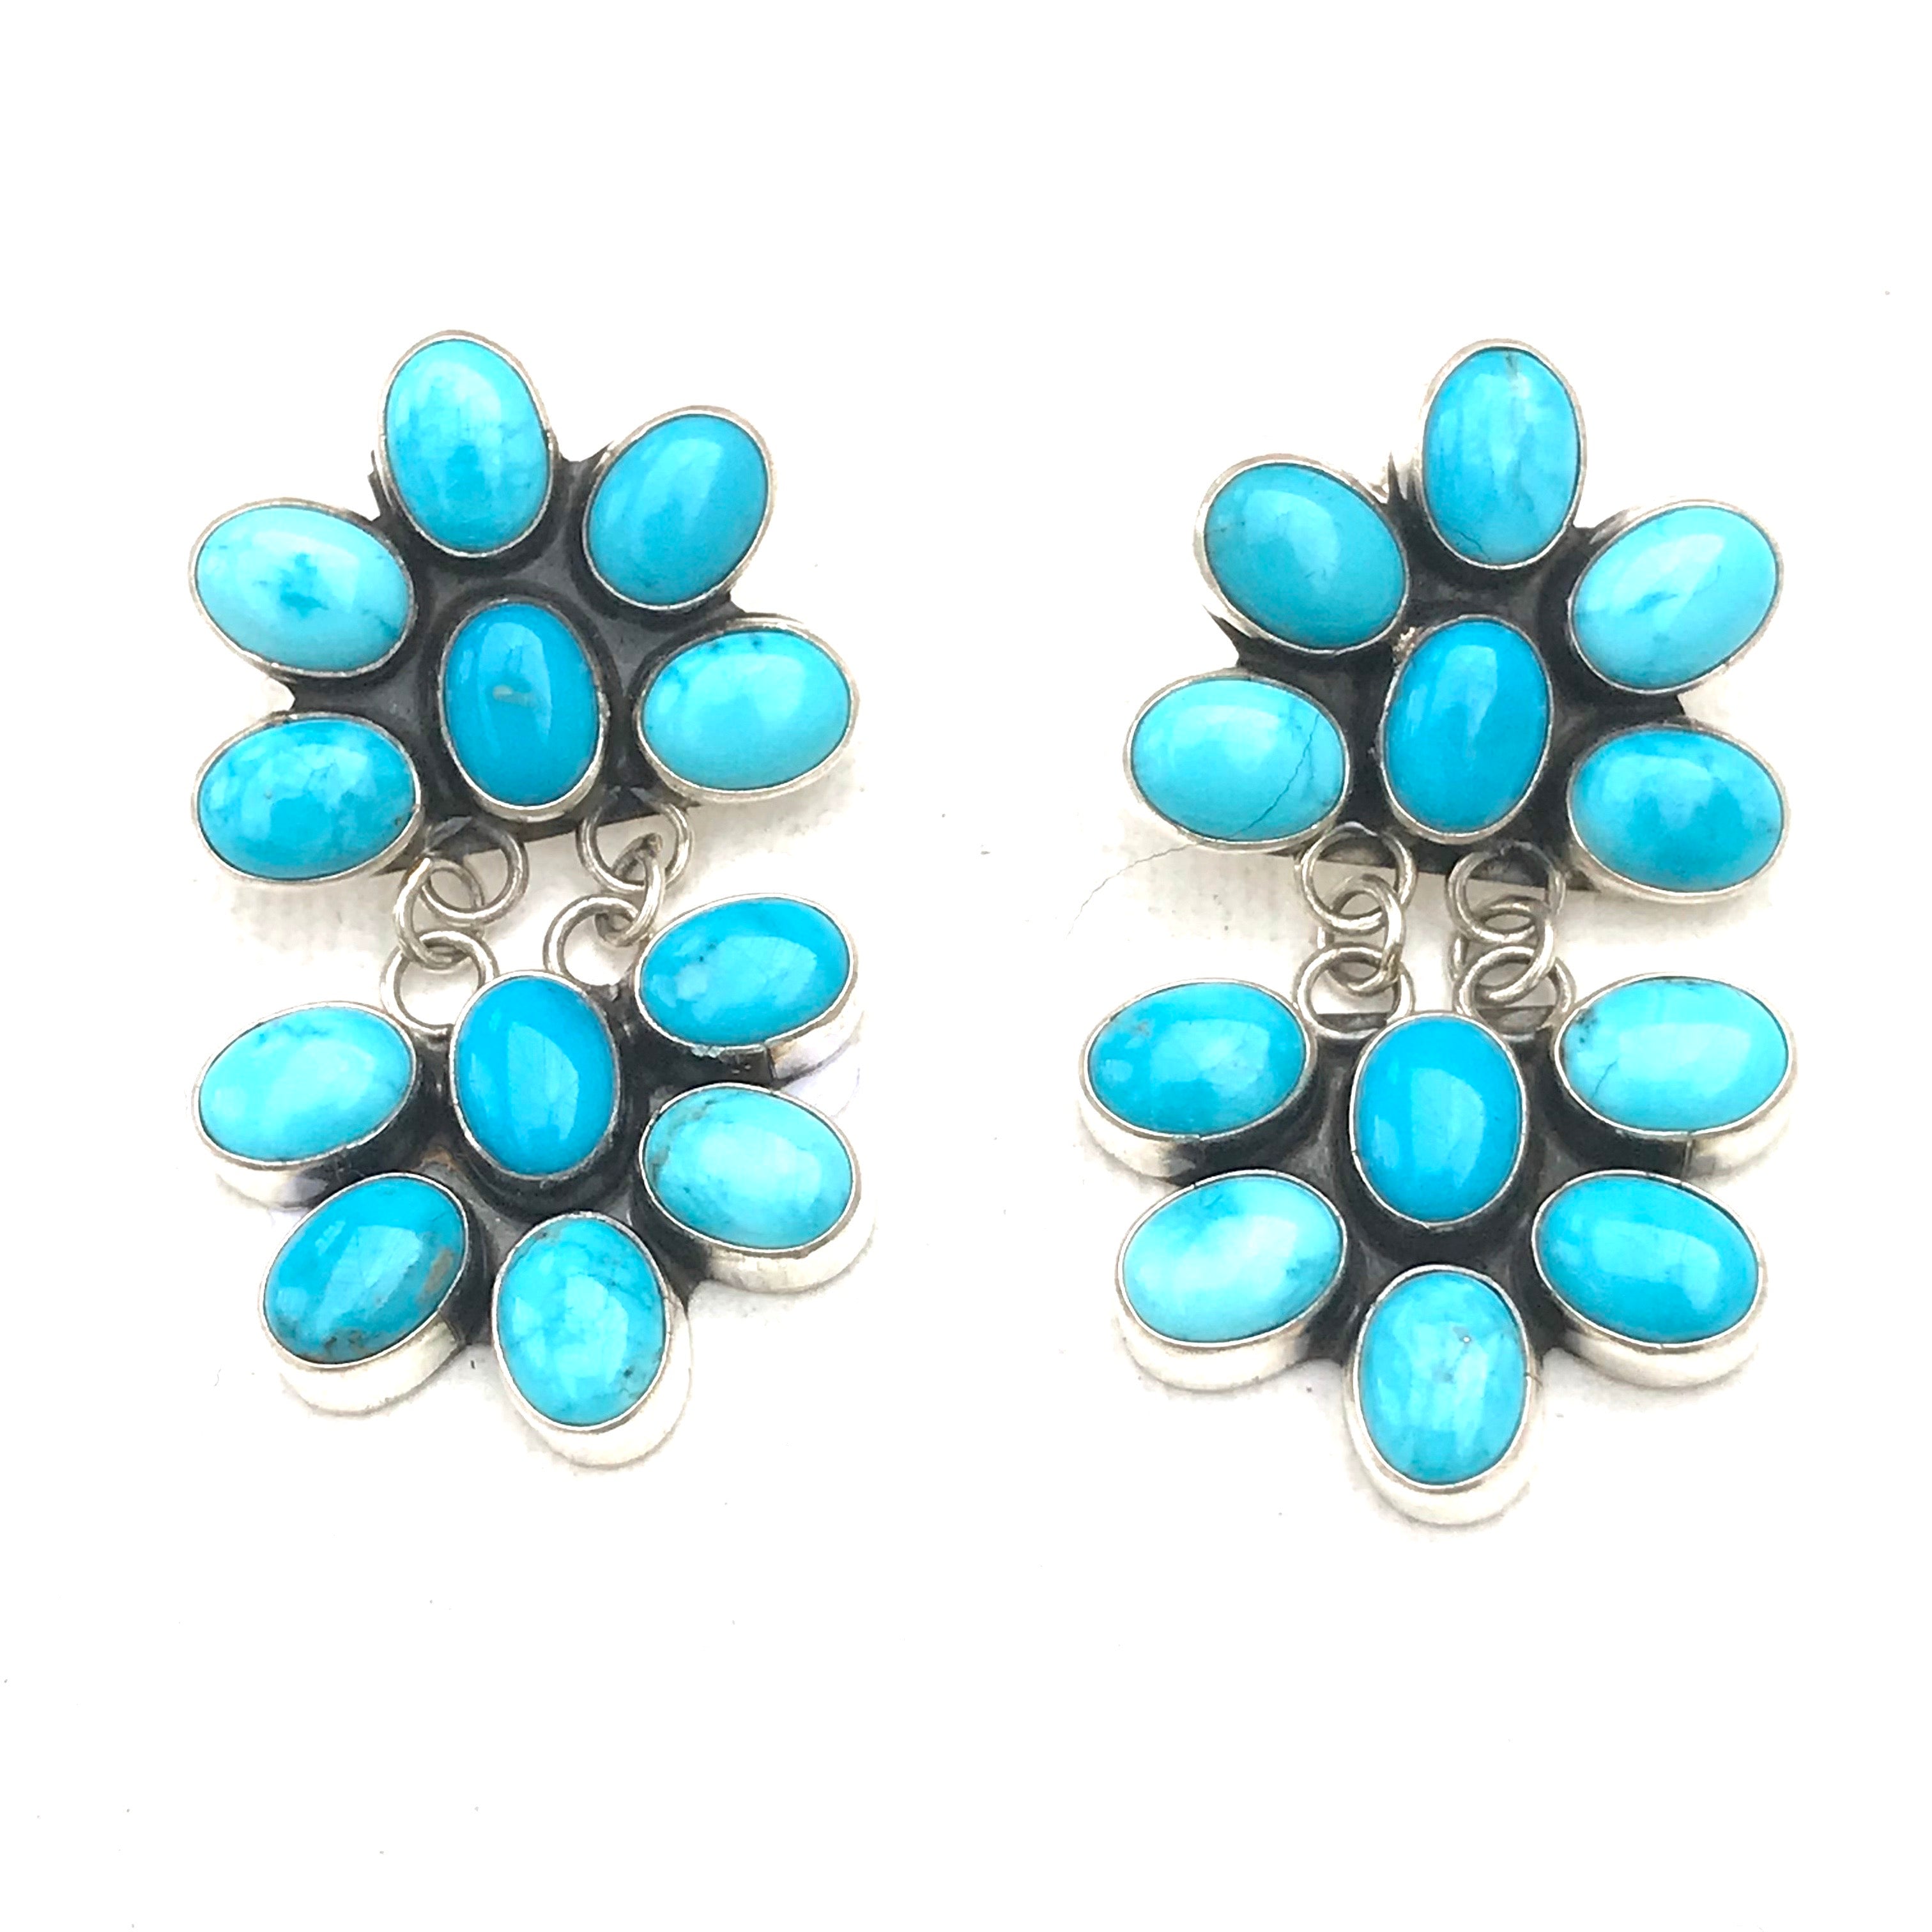 Stunning Sleeeping beauty Turquoise earrings